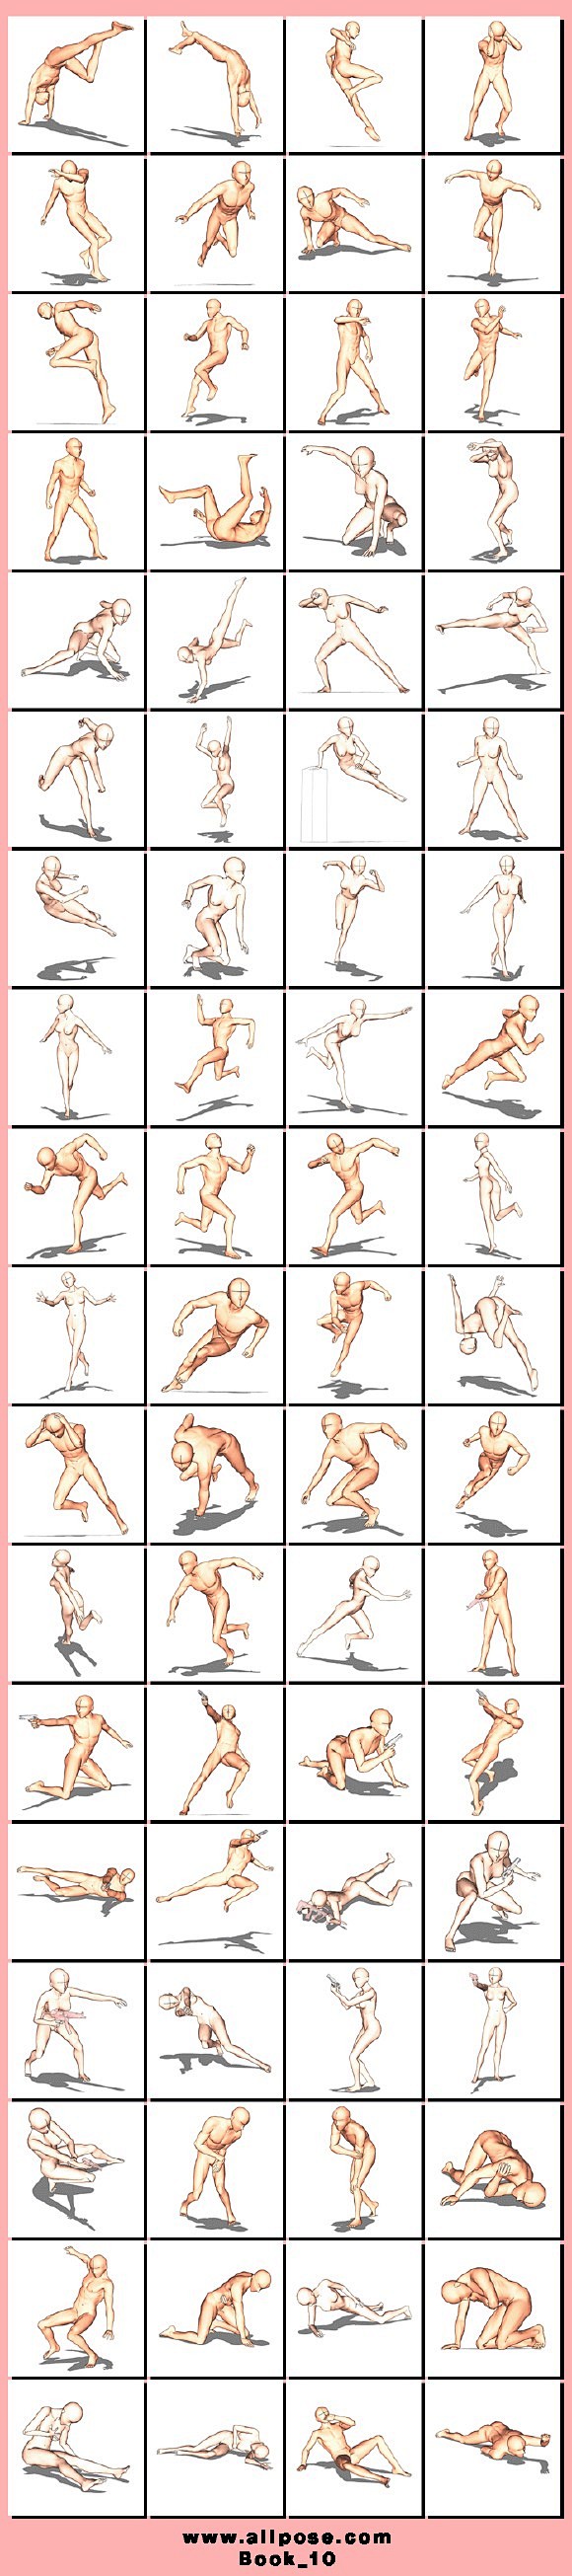 【素材】人体动作参考图..各种姿势_手绘...